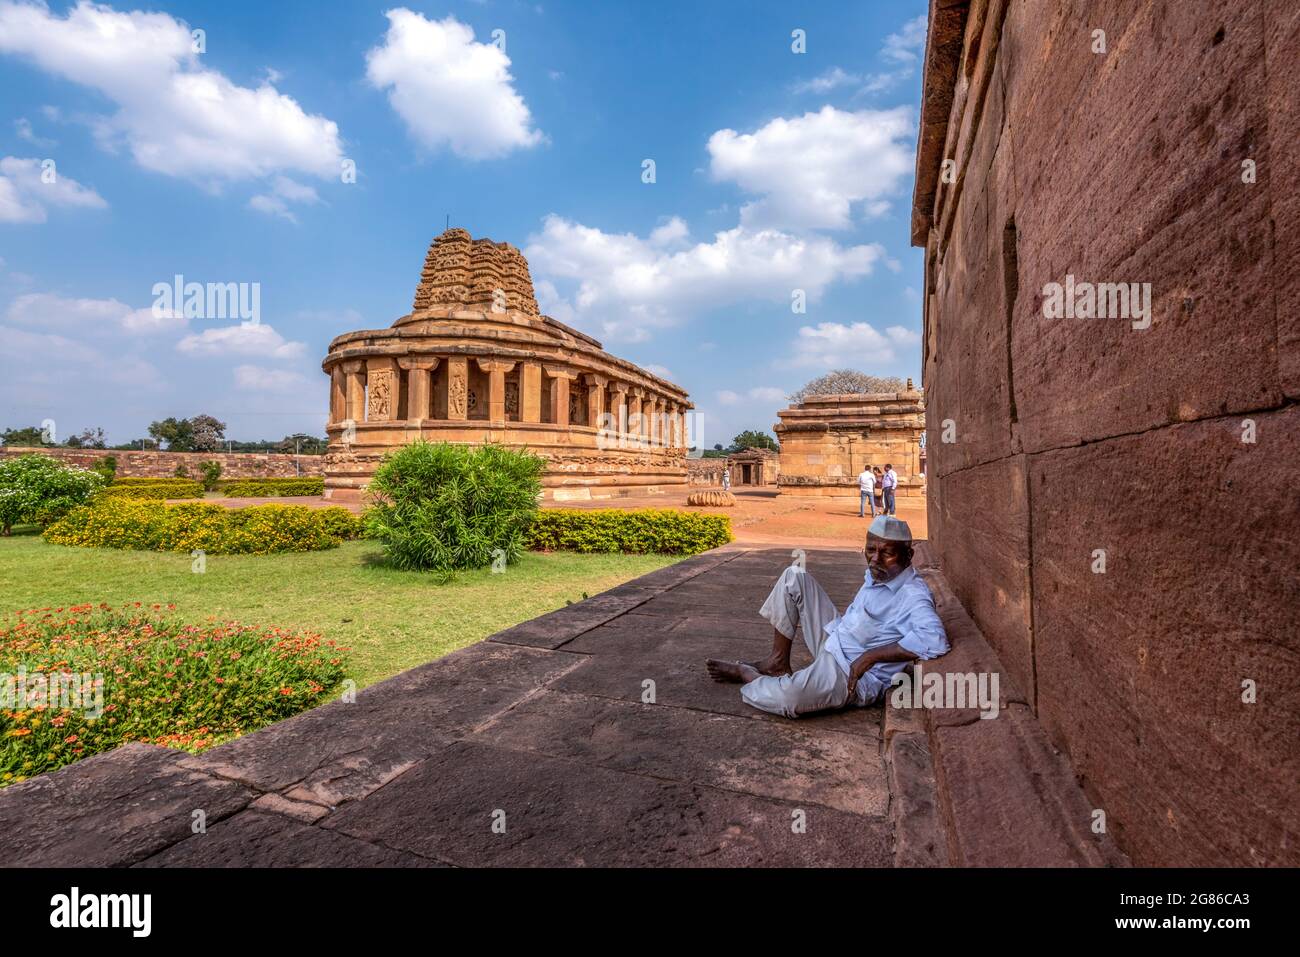 Aihole, Karnataka - 8 de enero de 2020 : Templo Durga en Aihole. Uno de los destinos turísticos más famosos de karnataka, India. Foto de stock